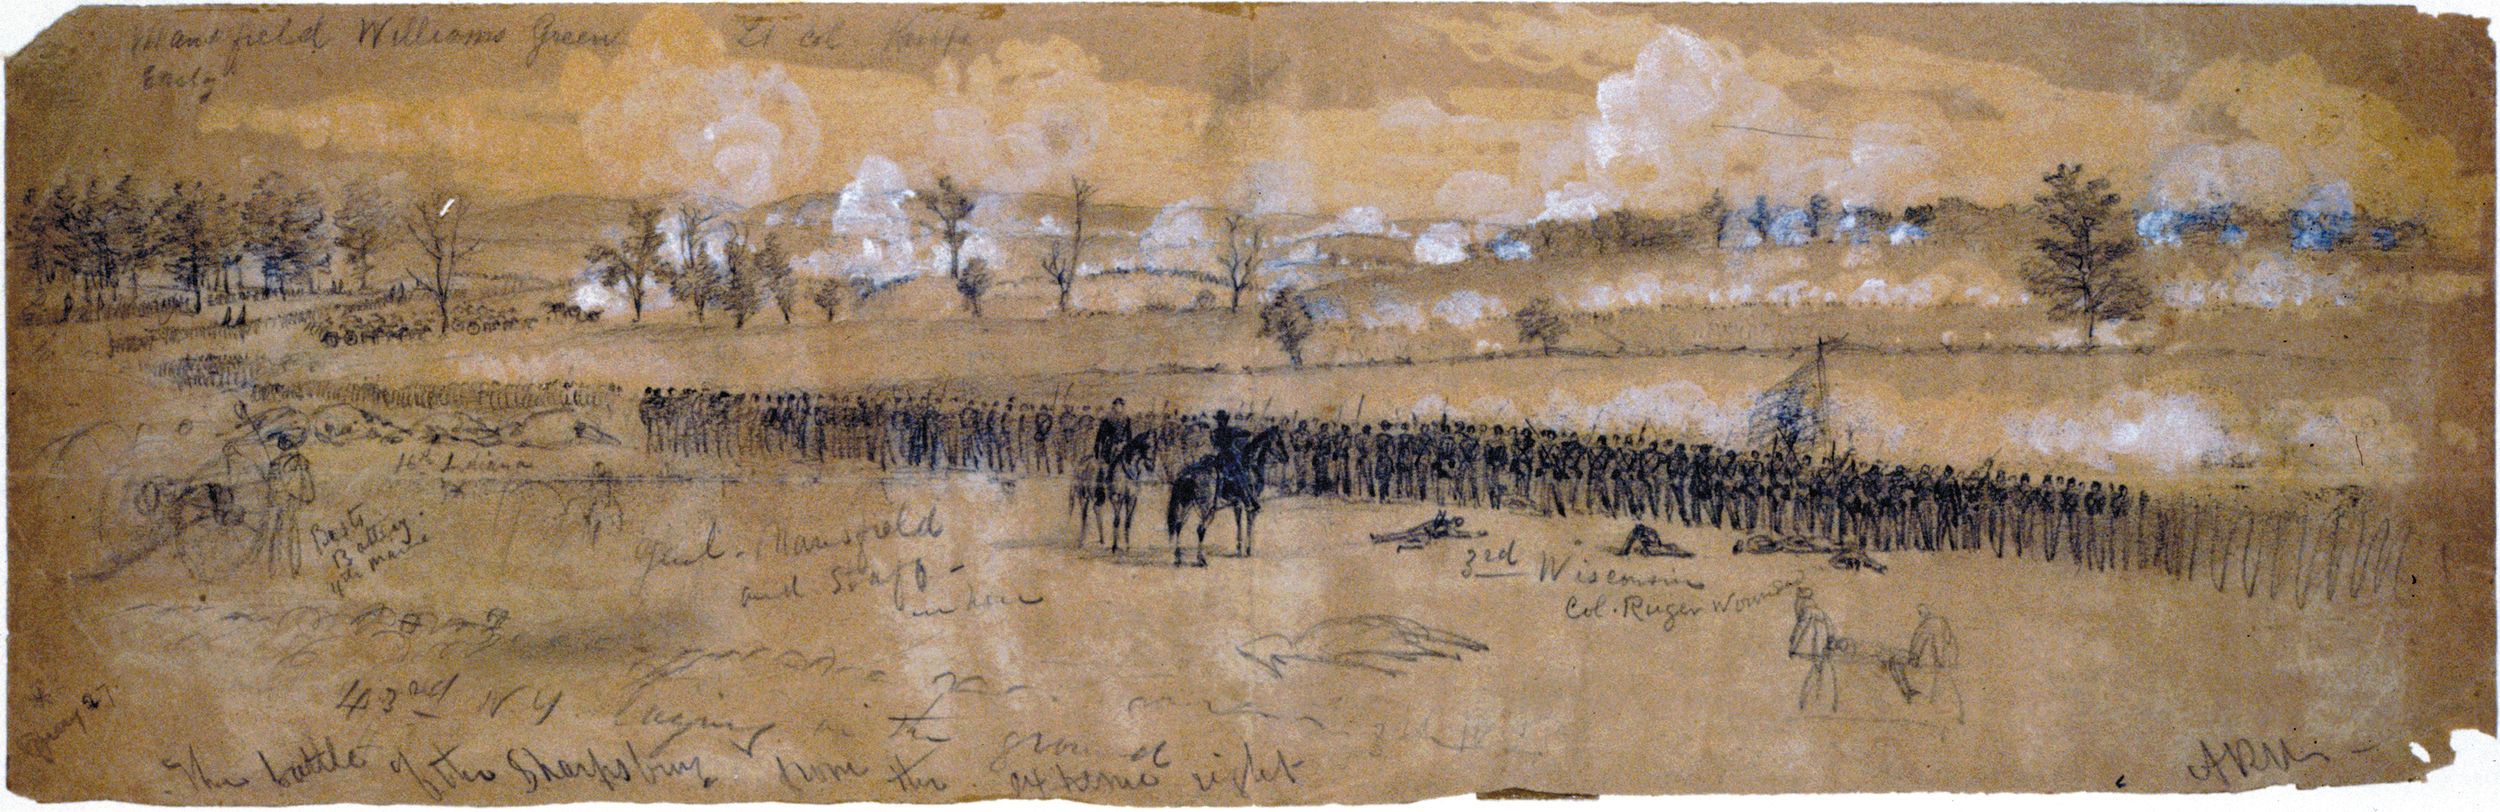 联邦军队在少将约瑟夫·曼斯菲尔德与承认交火——害死捍卫玉米田在这个草图,阿尔弗雷德·r·安蒂特姆河Waud哈珀的周刊。到那时,曼斯菲尔德已经受到了致命的伤害。